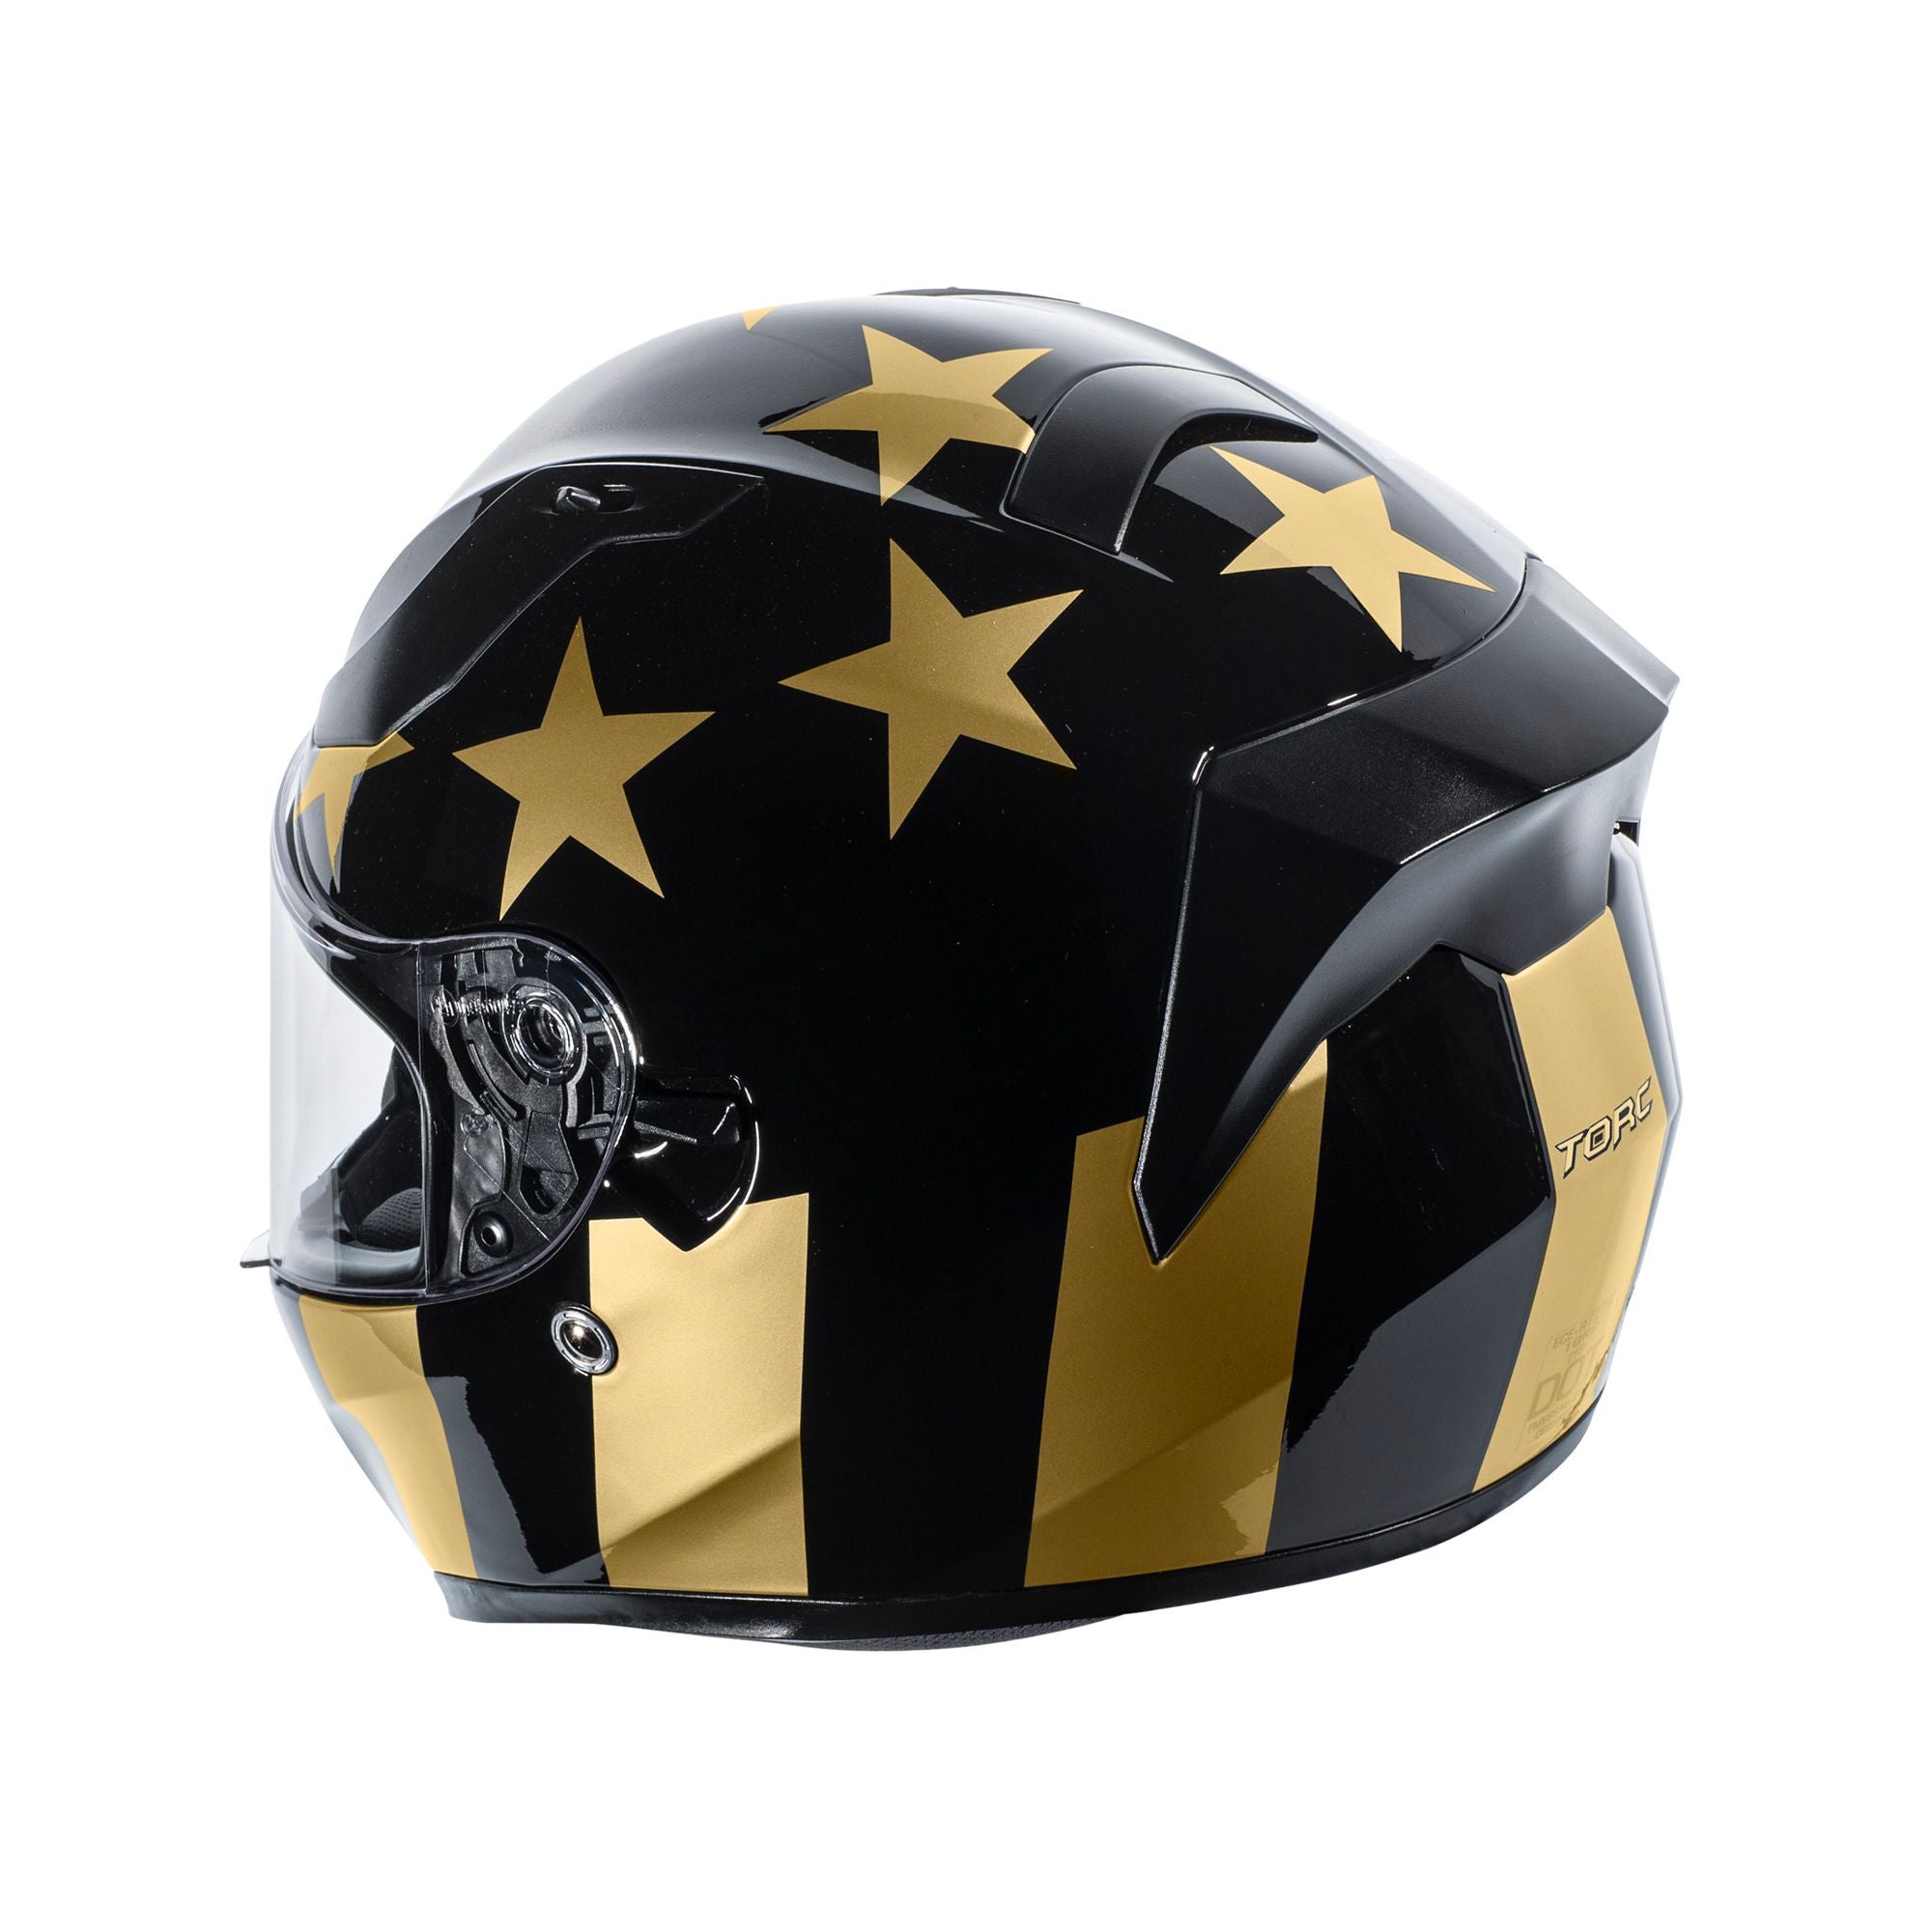 TORC T-15 Golden Time Full Face Street Motorcycle Helmet